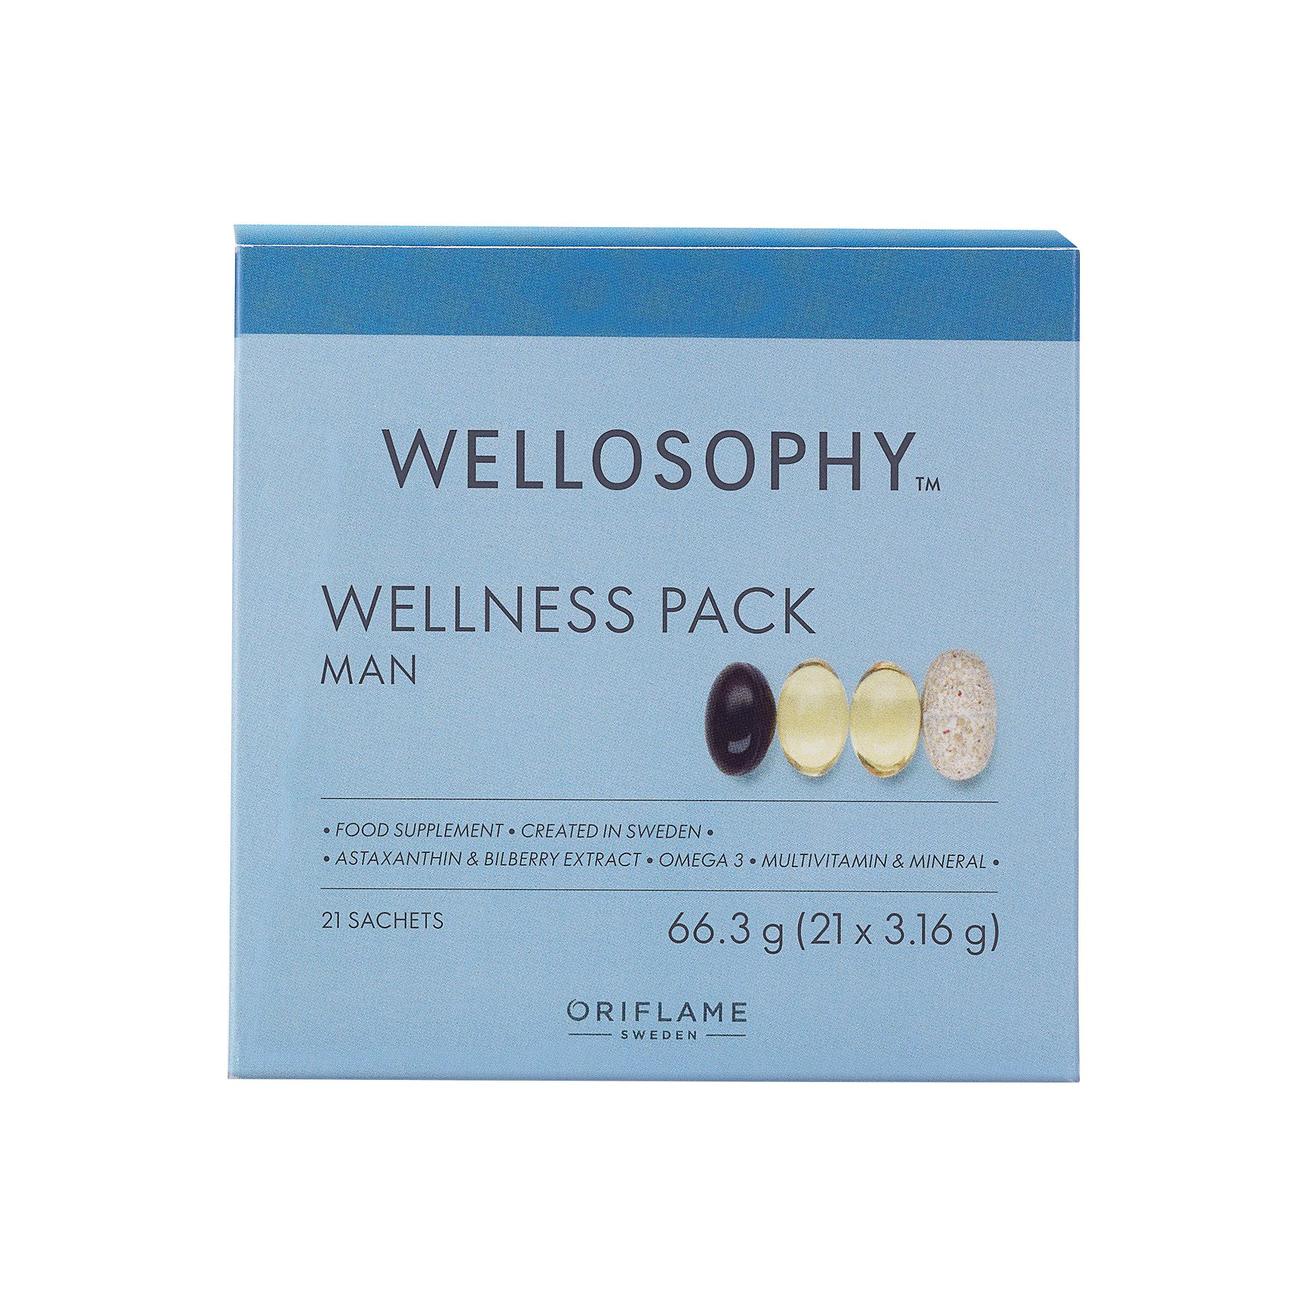 Wellness balíček pre mužov Wellosophy v akcii za 42€ v Oriflame